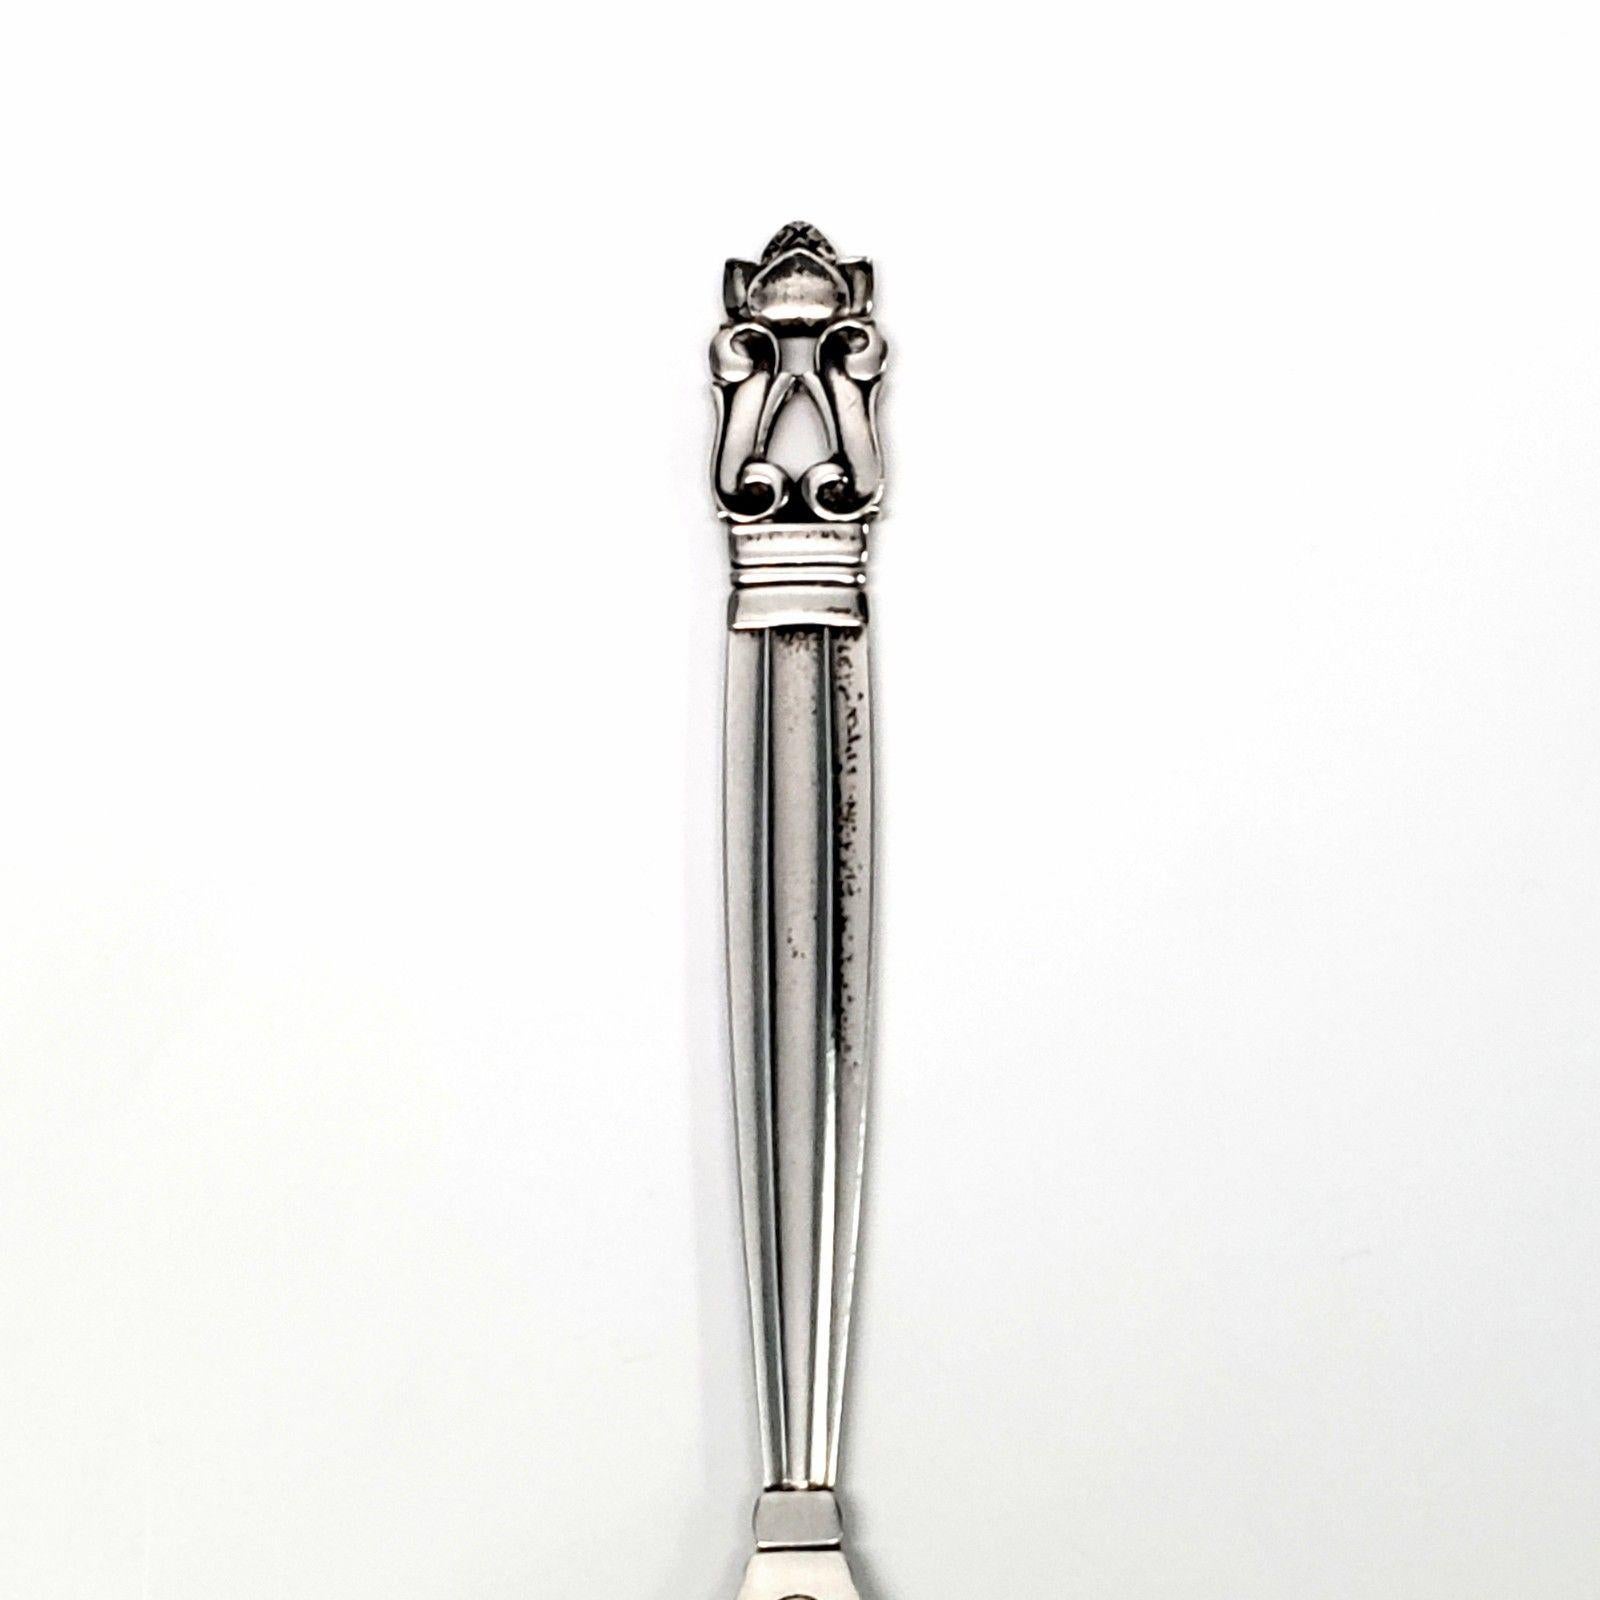 Georg Jensen sterling silver large teaspoon in the Acorn pattern. Marked: GEORG JENSEN STERLING DENMARK. Measures 6 1/4